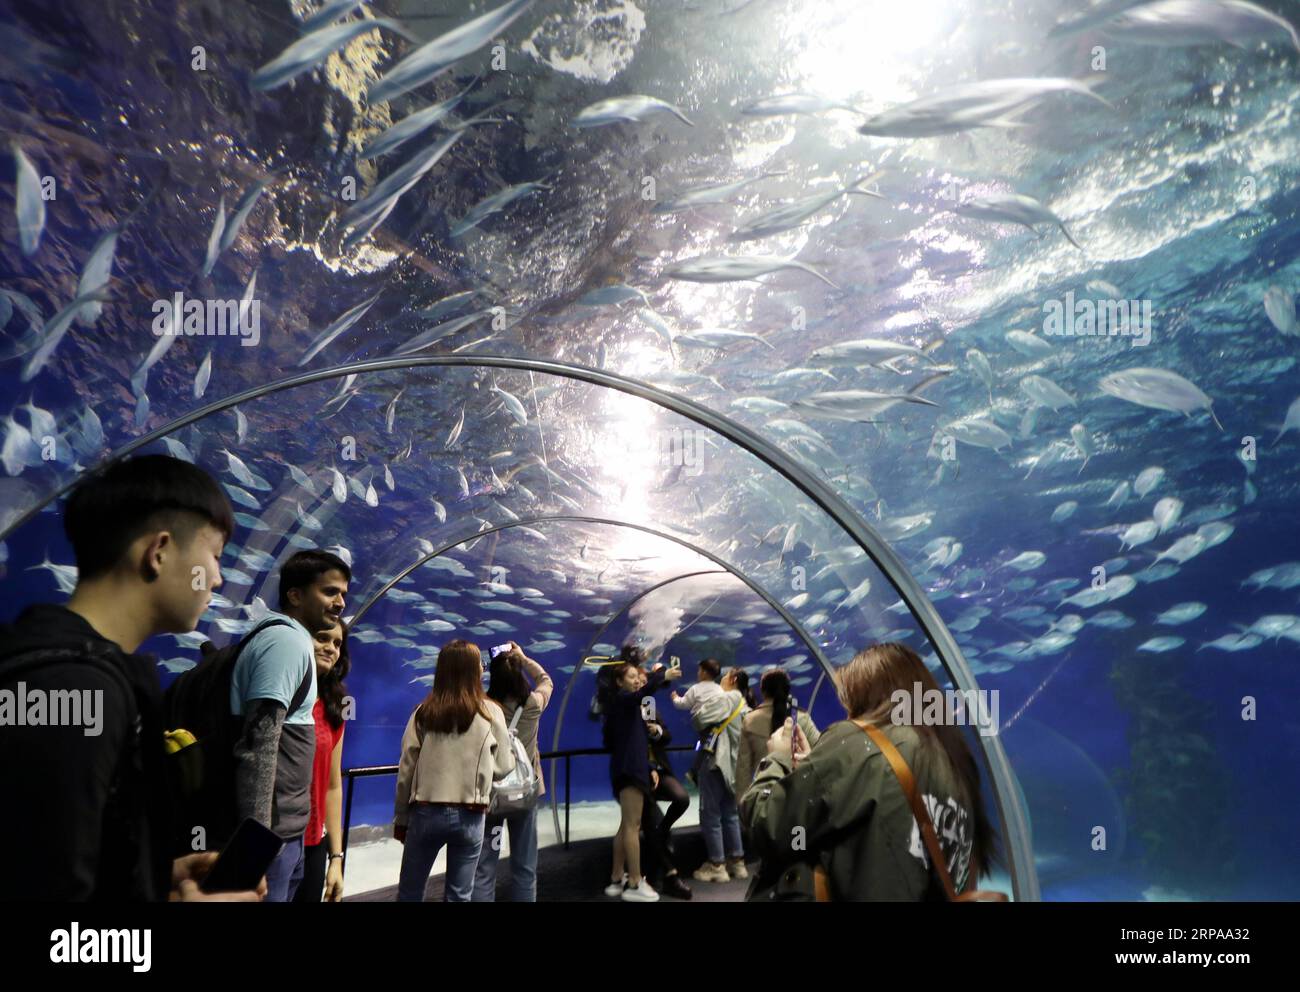 (190501) -- SHANGHAI, 1 mai 2019 (Xinhua) -- des touristes visitent l'Aquarium océanique de Shanghai dans l'est de la Chine, Shanghai, 1 mai 2019. Le tourisme augmente car beaucoup de gens sortent pour des activités récréatives pendant la fête nationale de la fête du travail de quatre jours en Chine. (Xinhua/Liu Ying) CHINE-JOUR DE TRAVAIL-VACANCES-TOURISME (CN) PUBLICATIONxNOTxINxCHN Banque D'Images